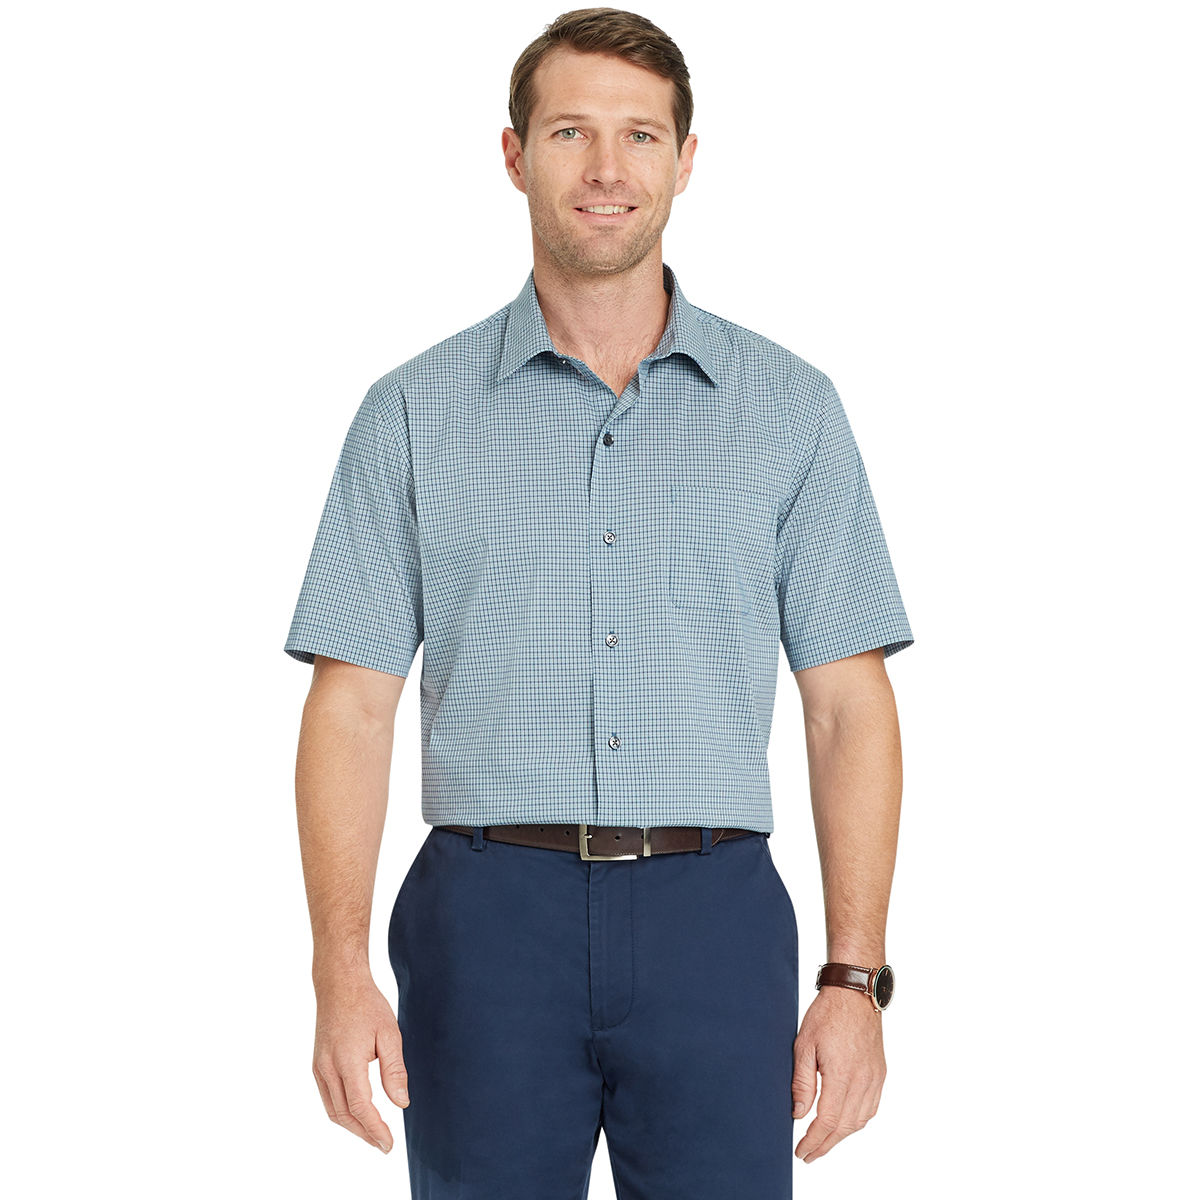 Van Heusen Men's Flex Small Check Short-Sleeve Shirt - Green, XL